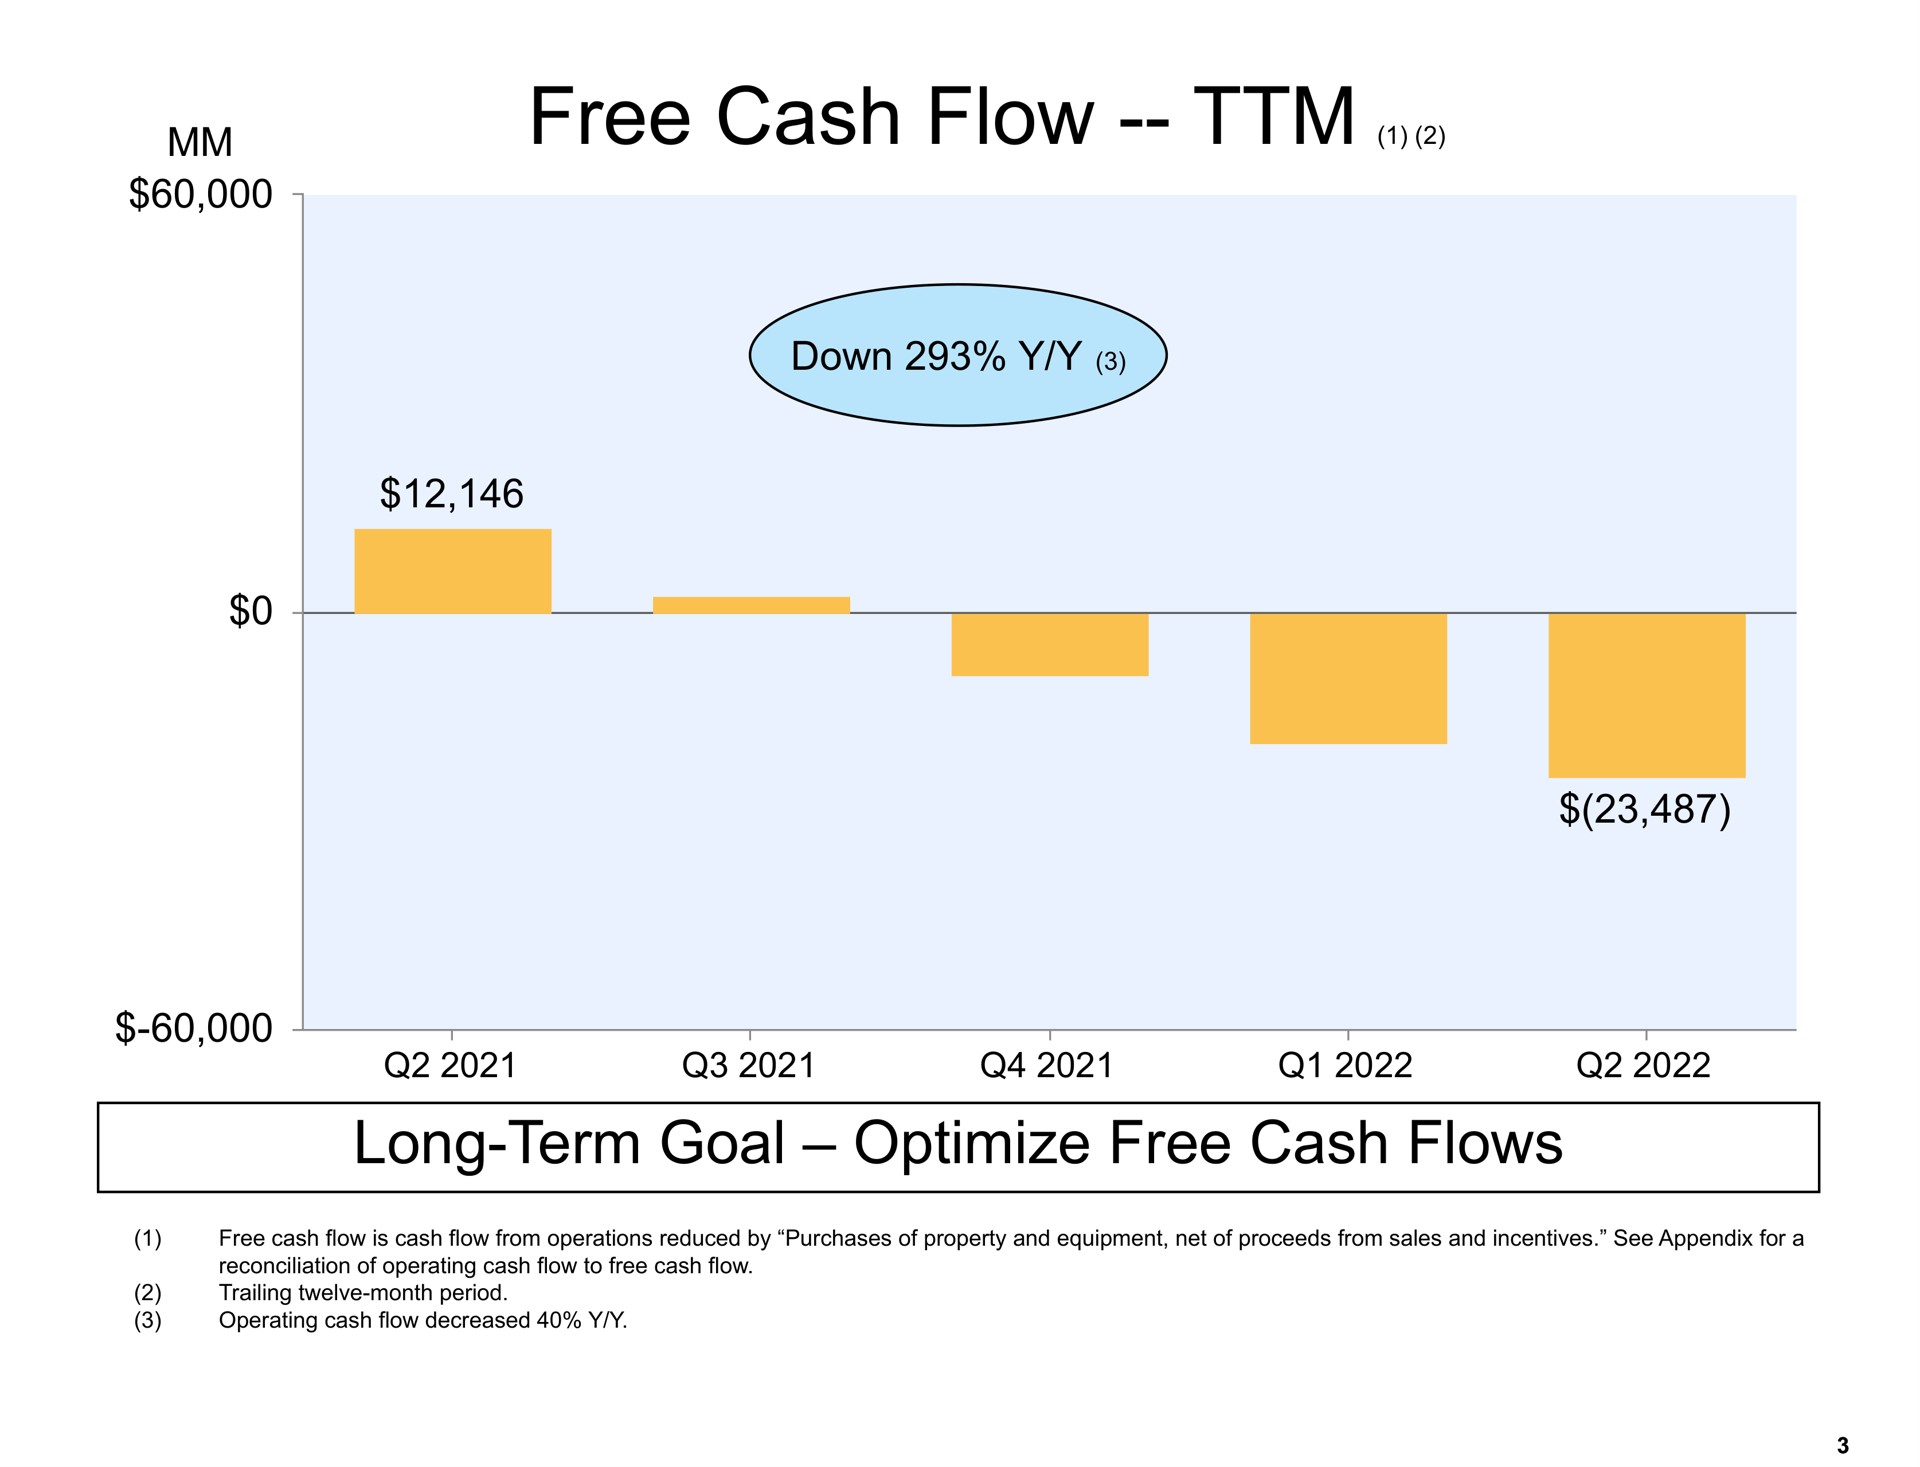 free cash flow long term goal optimize free cash flows | Amazon